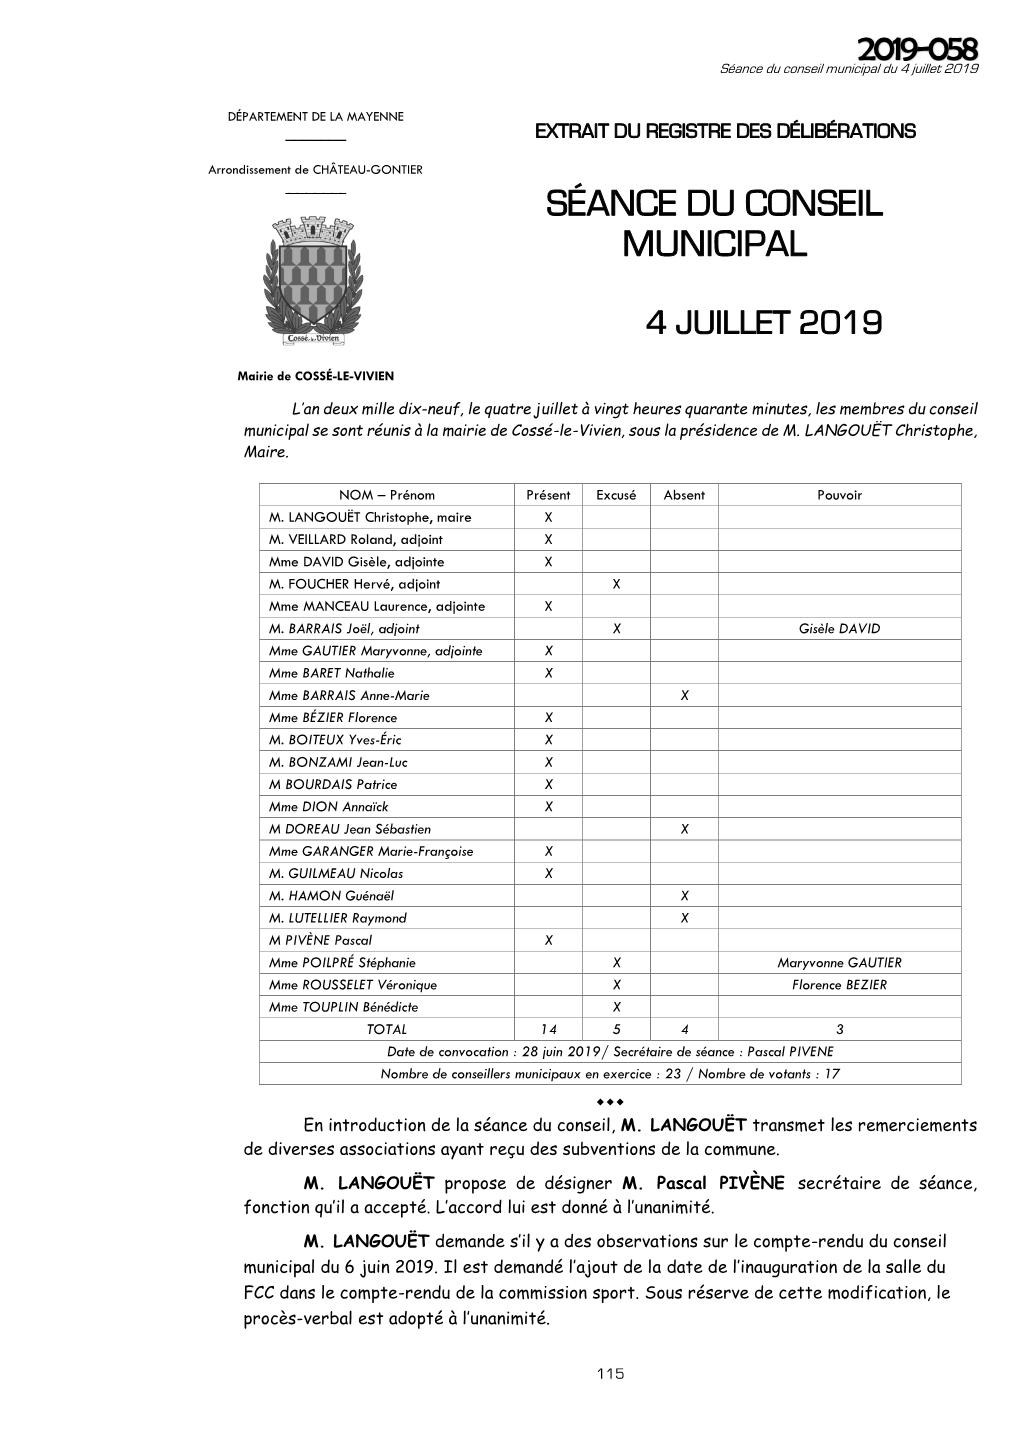 Séance Du Conseil Municipal 2019-058